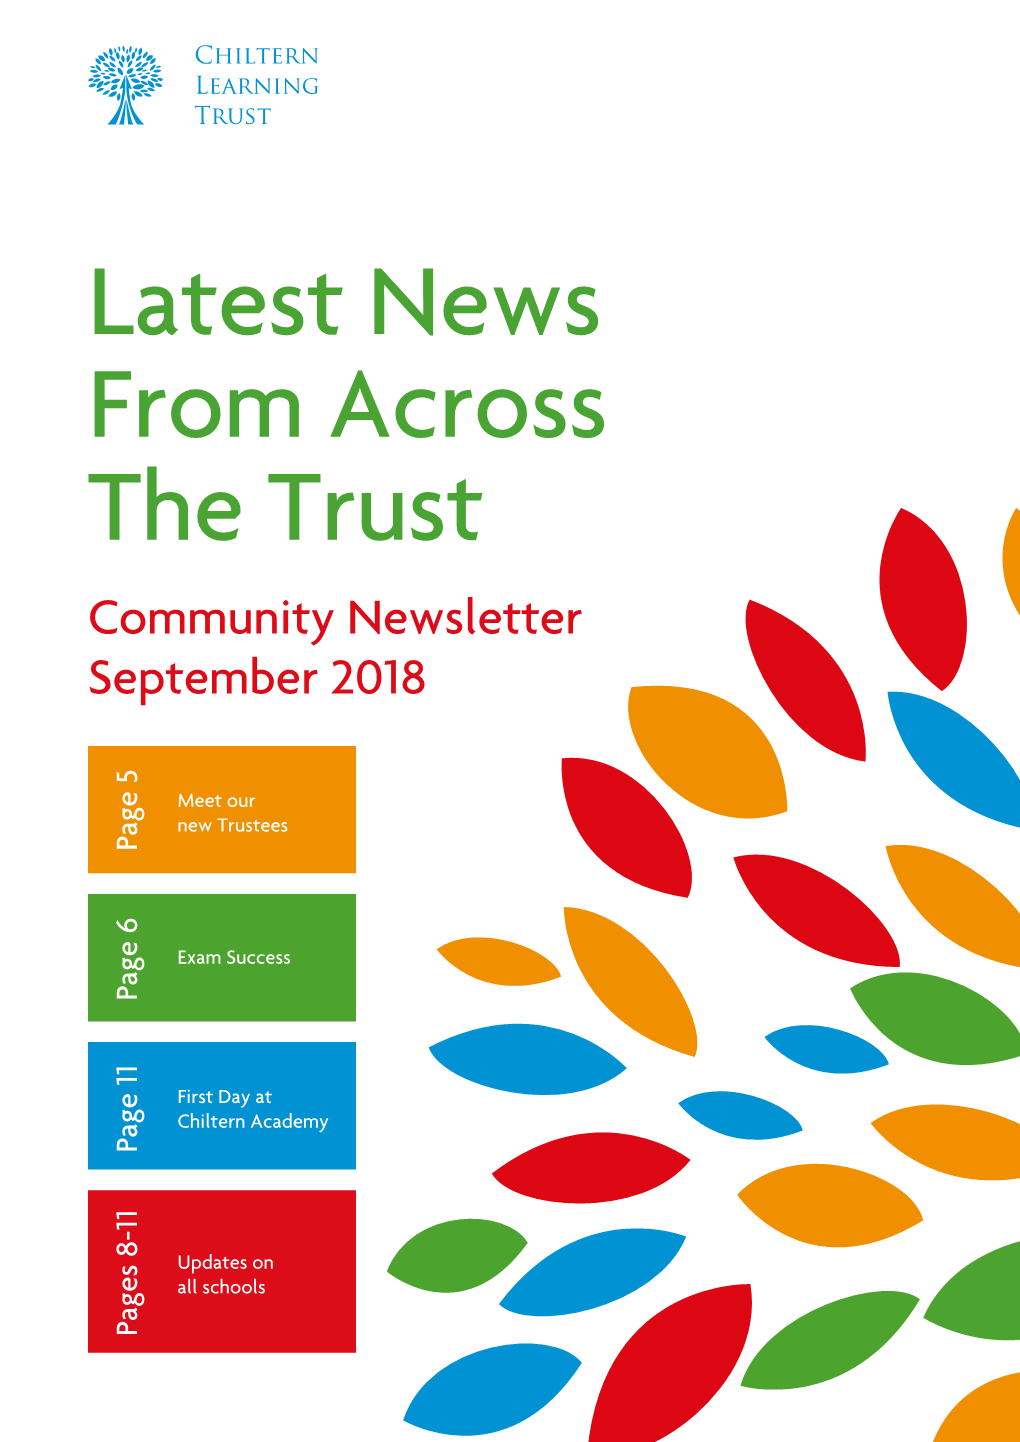 Latest News from Across the Trust Community Newsletter September 2018